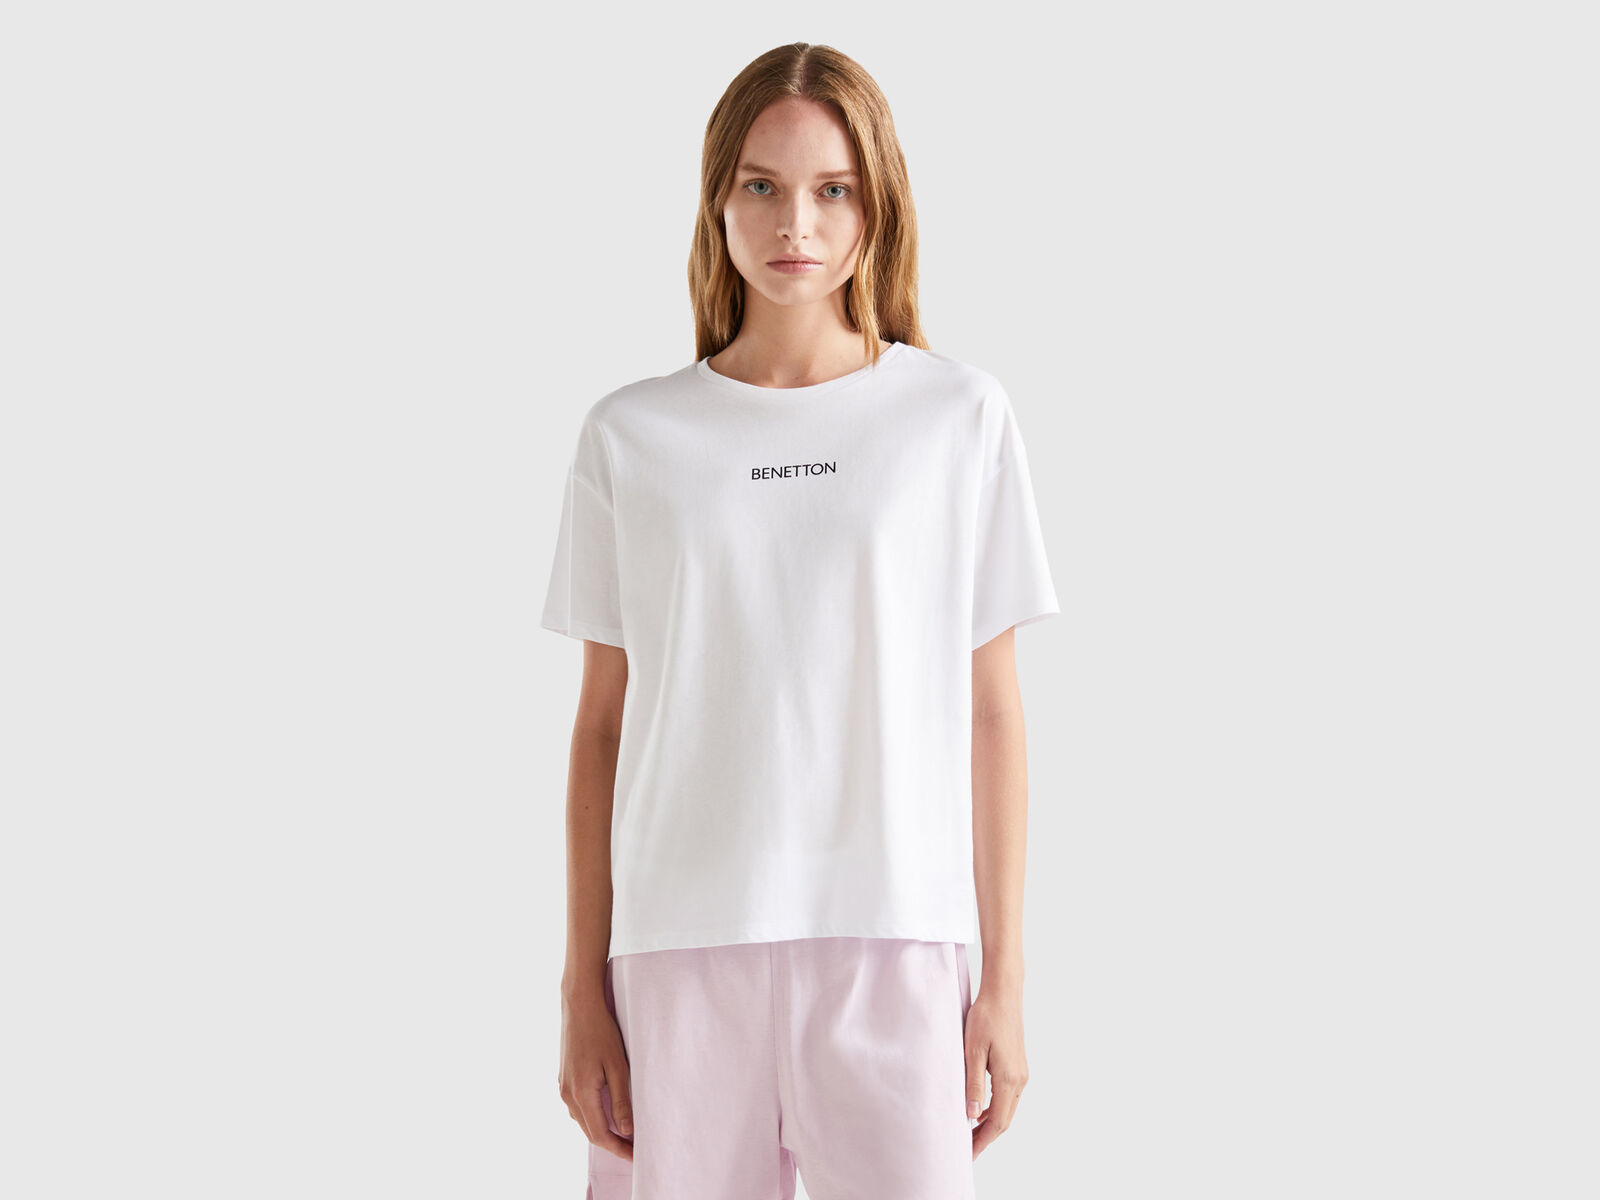 Benetton | cotton 100% - White t-shirt